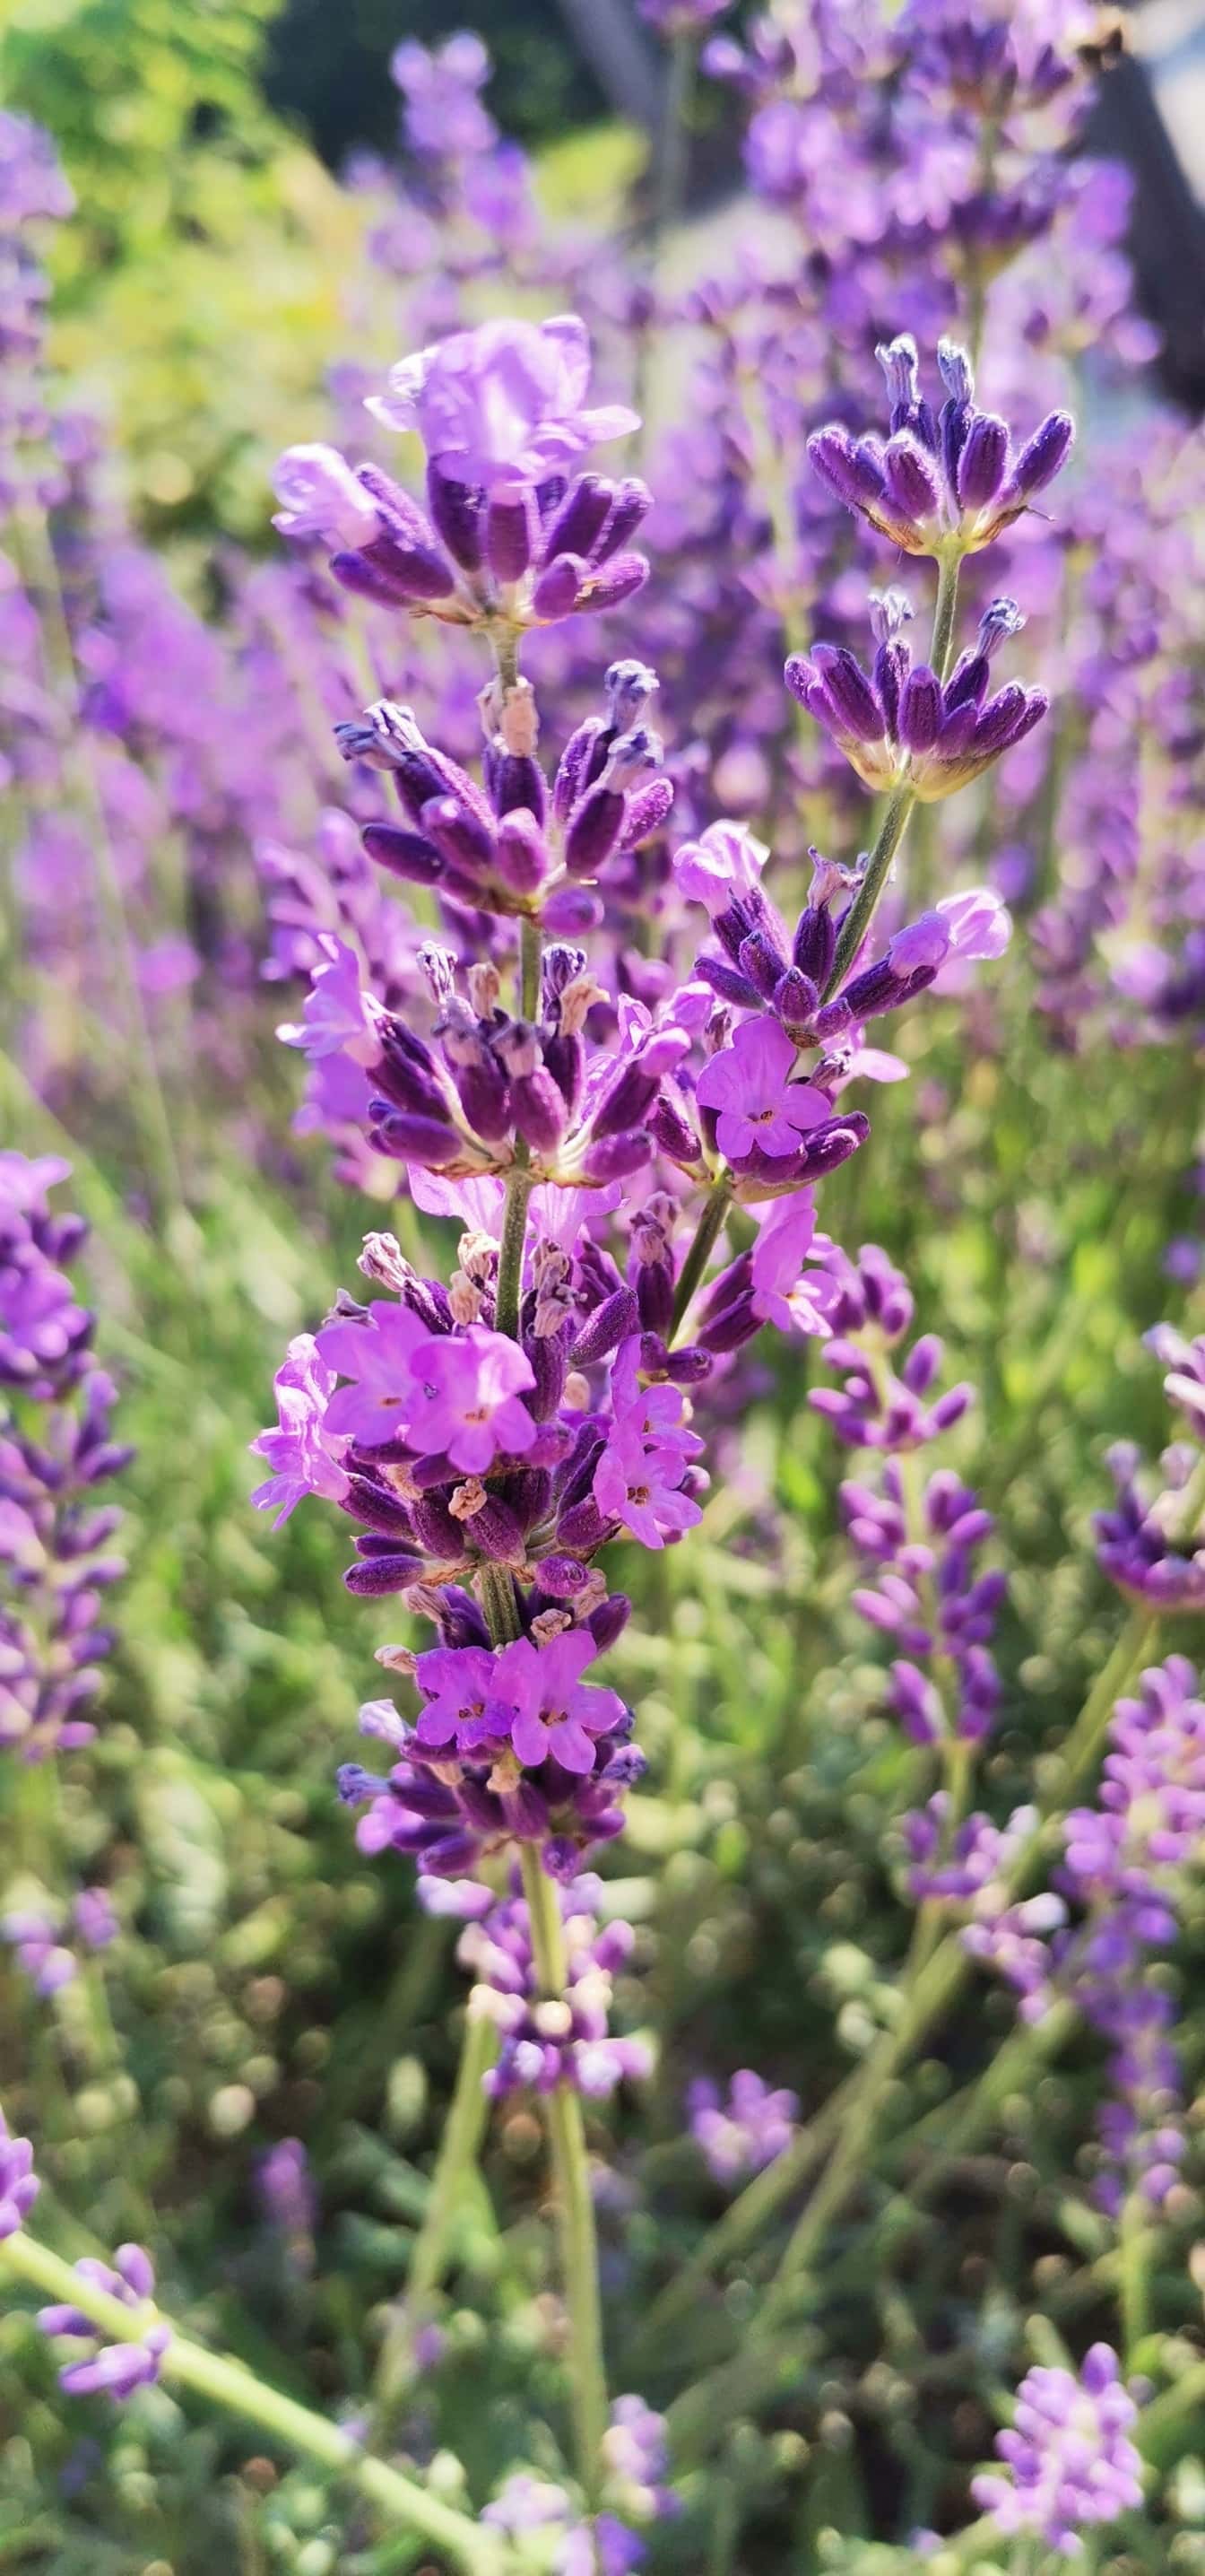 Purperachtige bloem van wilde bloem Engelse lavendel (Lavandula angustifolia) op zonnige measow